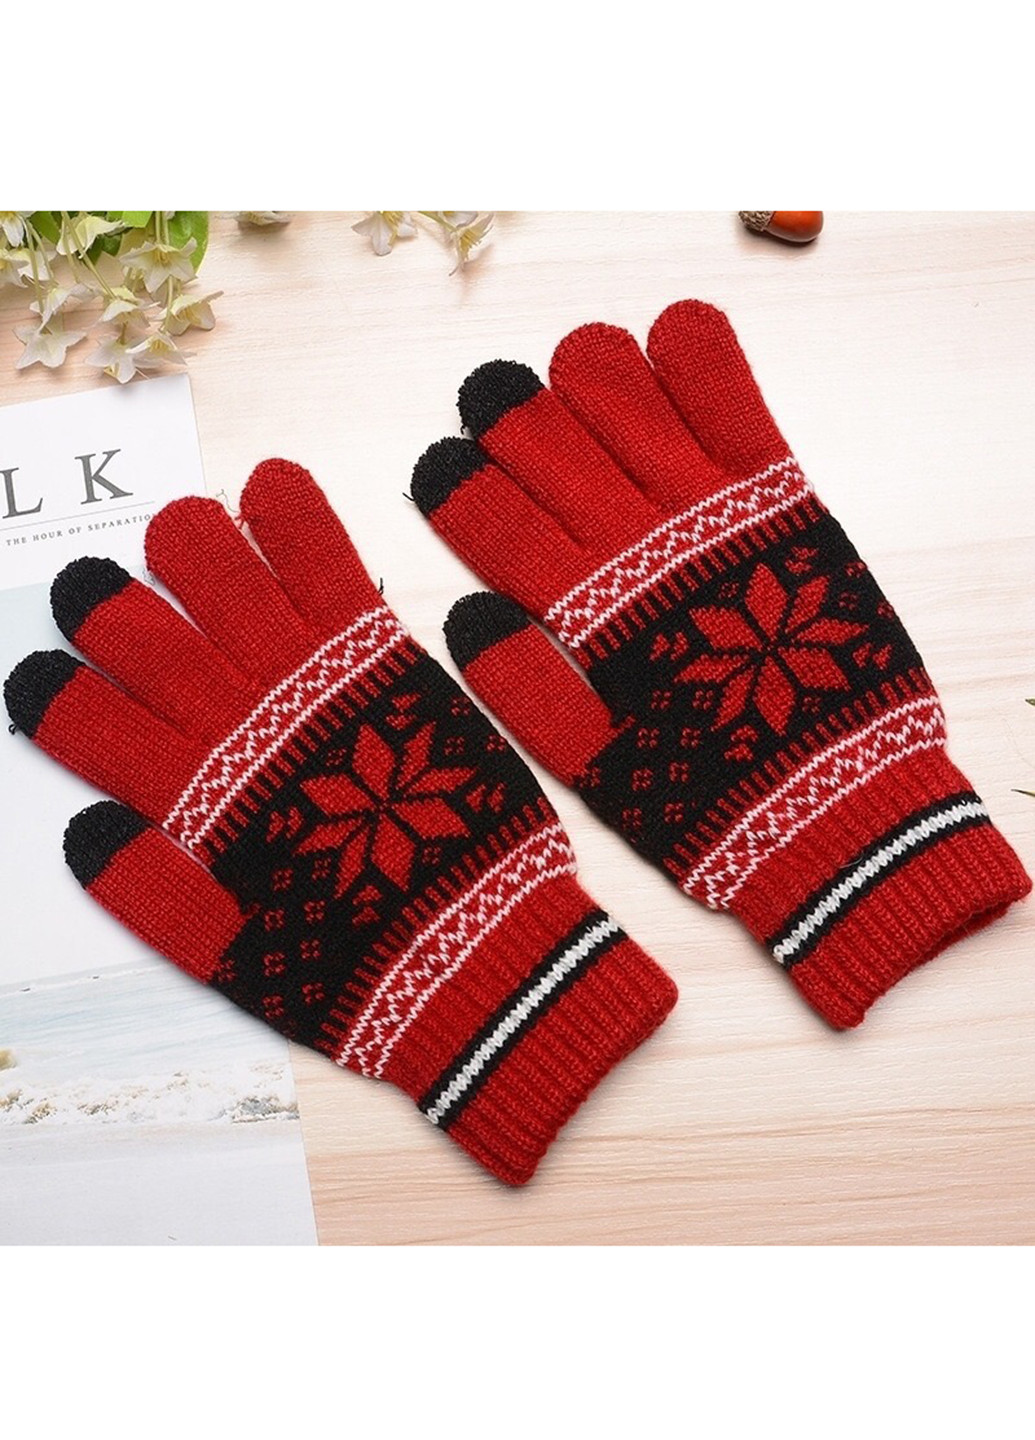 Перчатки ХоКо XoKo для сенсорных экранов ornament black/red (161292302)